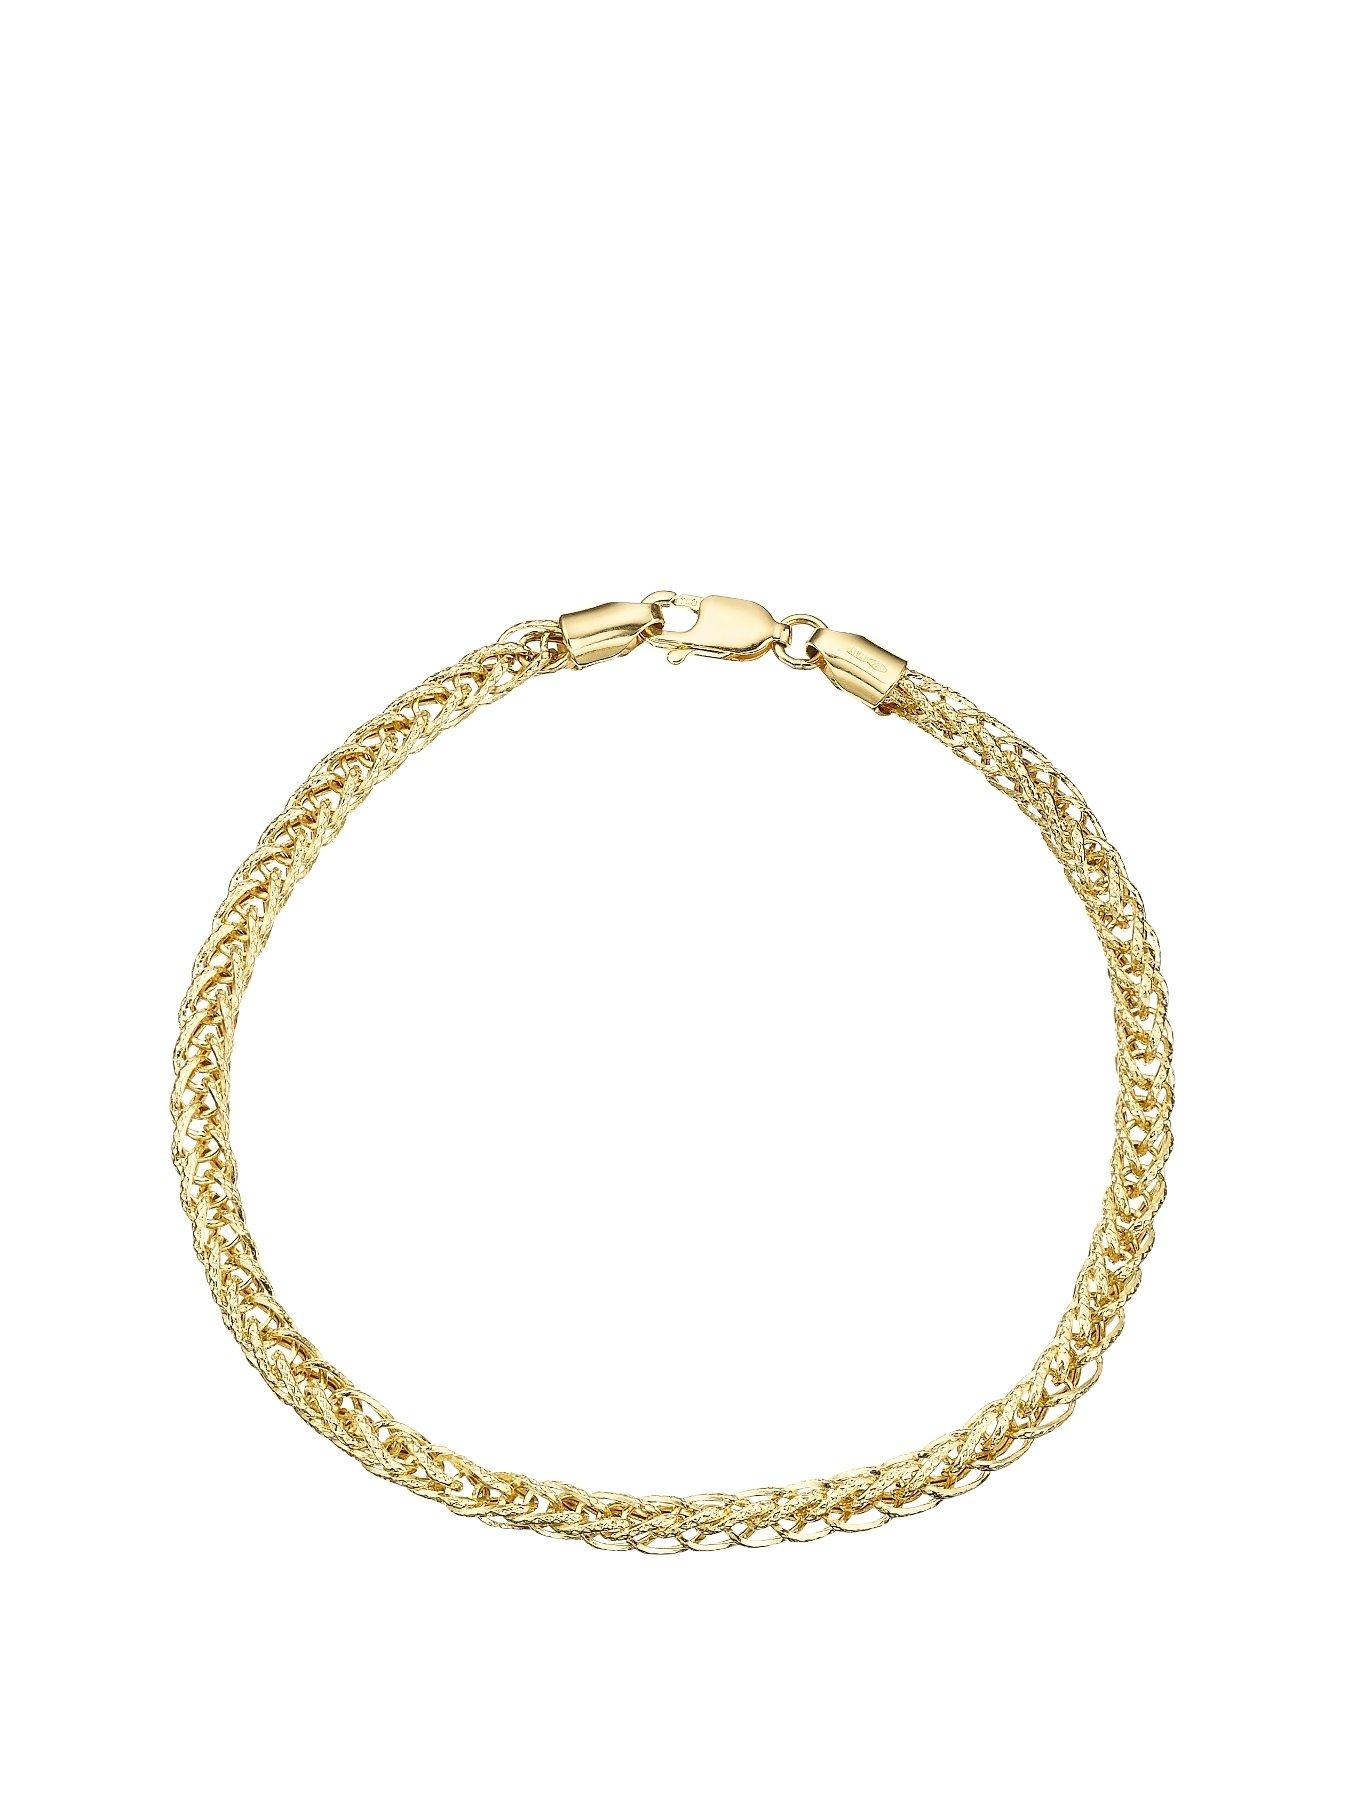 Women 9 Carat Yellow Gold Fancy Wheatchain Bracelet